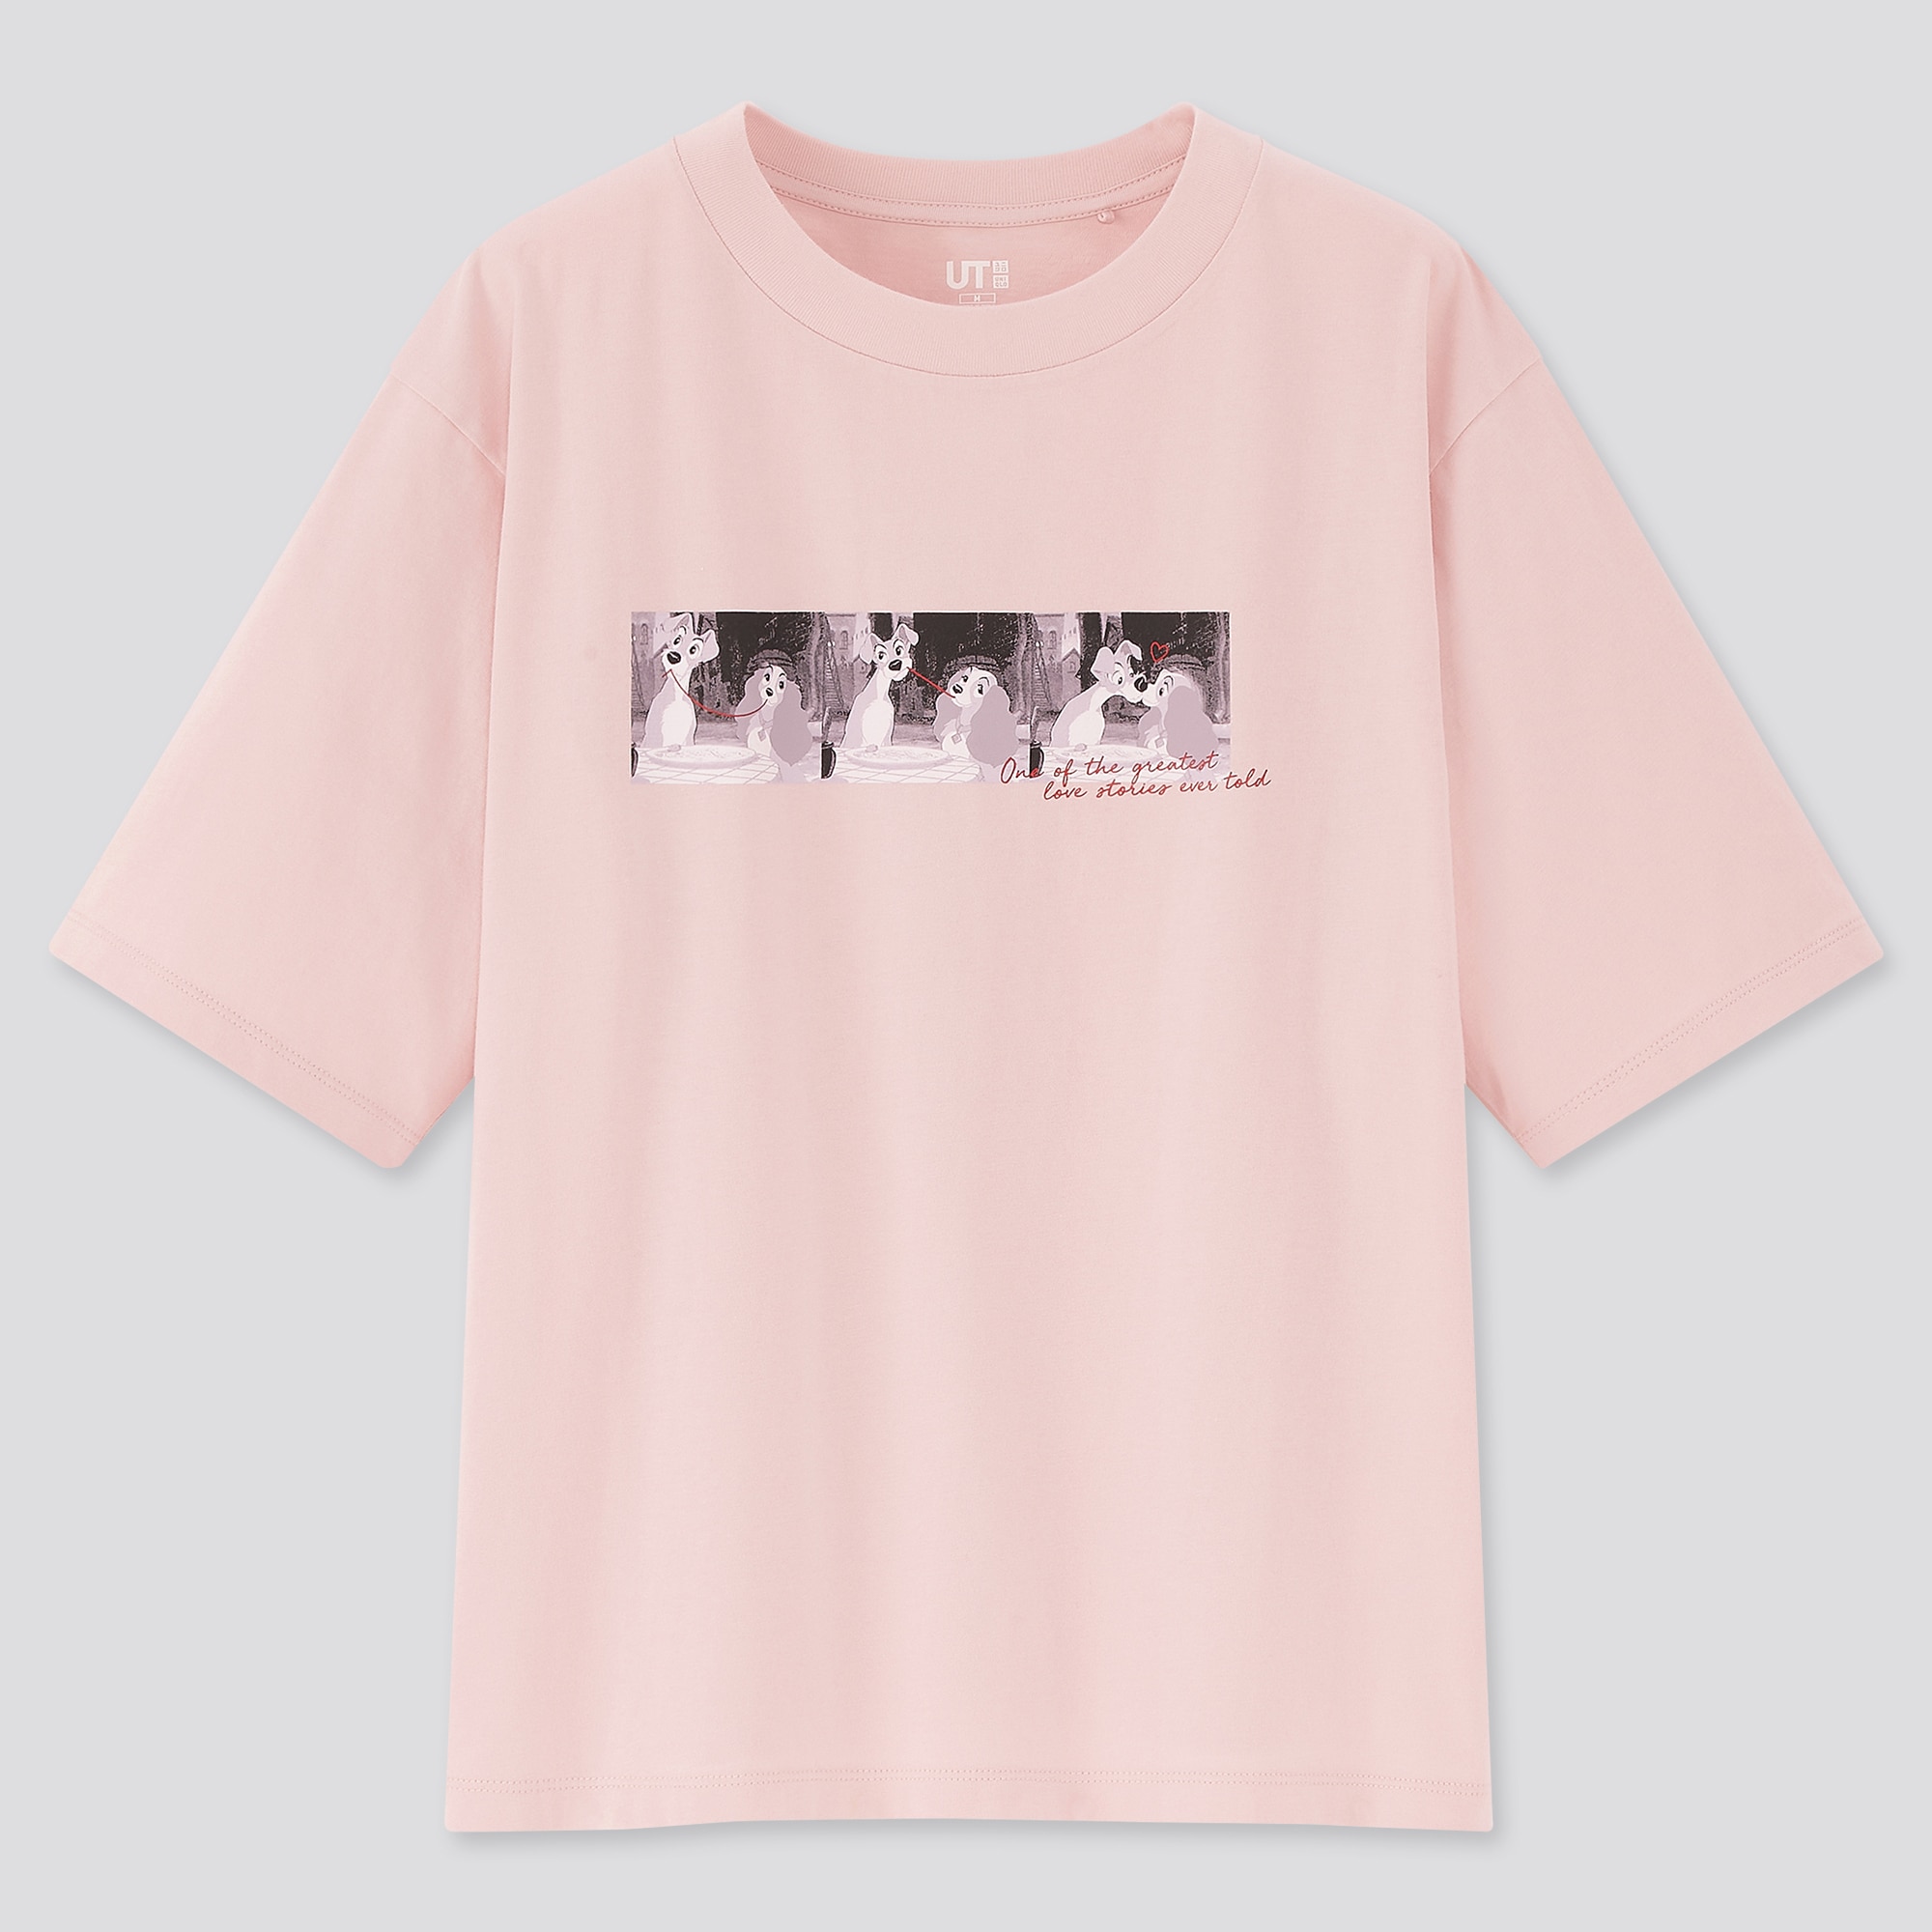 Uniqloのディズニー プリンセス ソング Ut グラフィックtシャツ 半袖 レギュラーフィット Stylehint